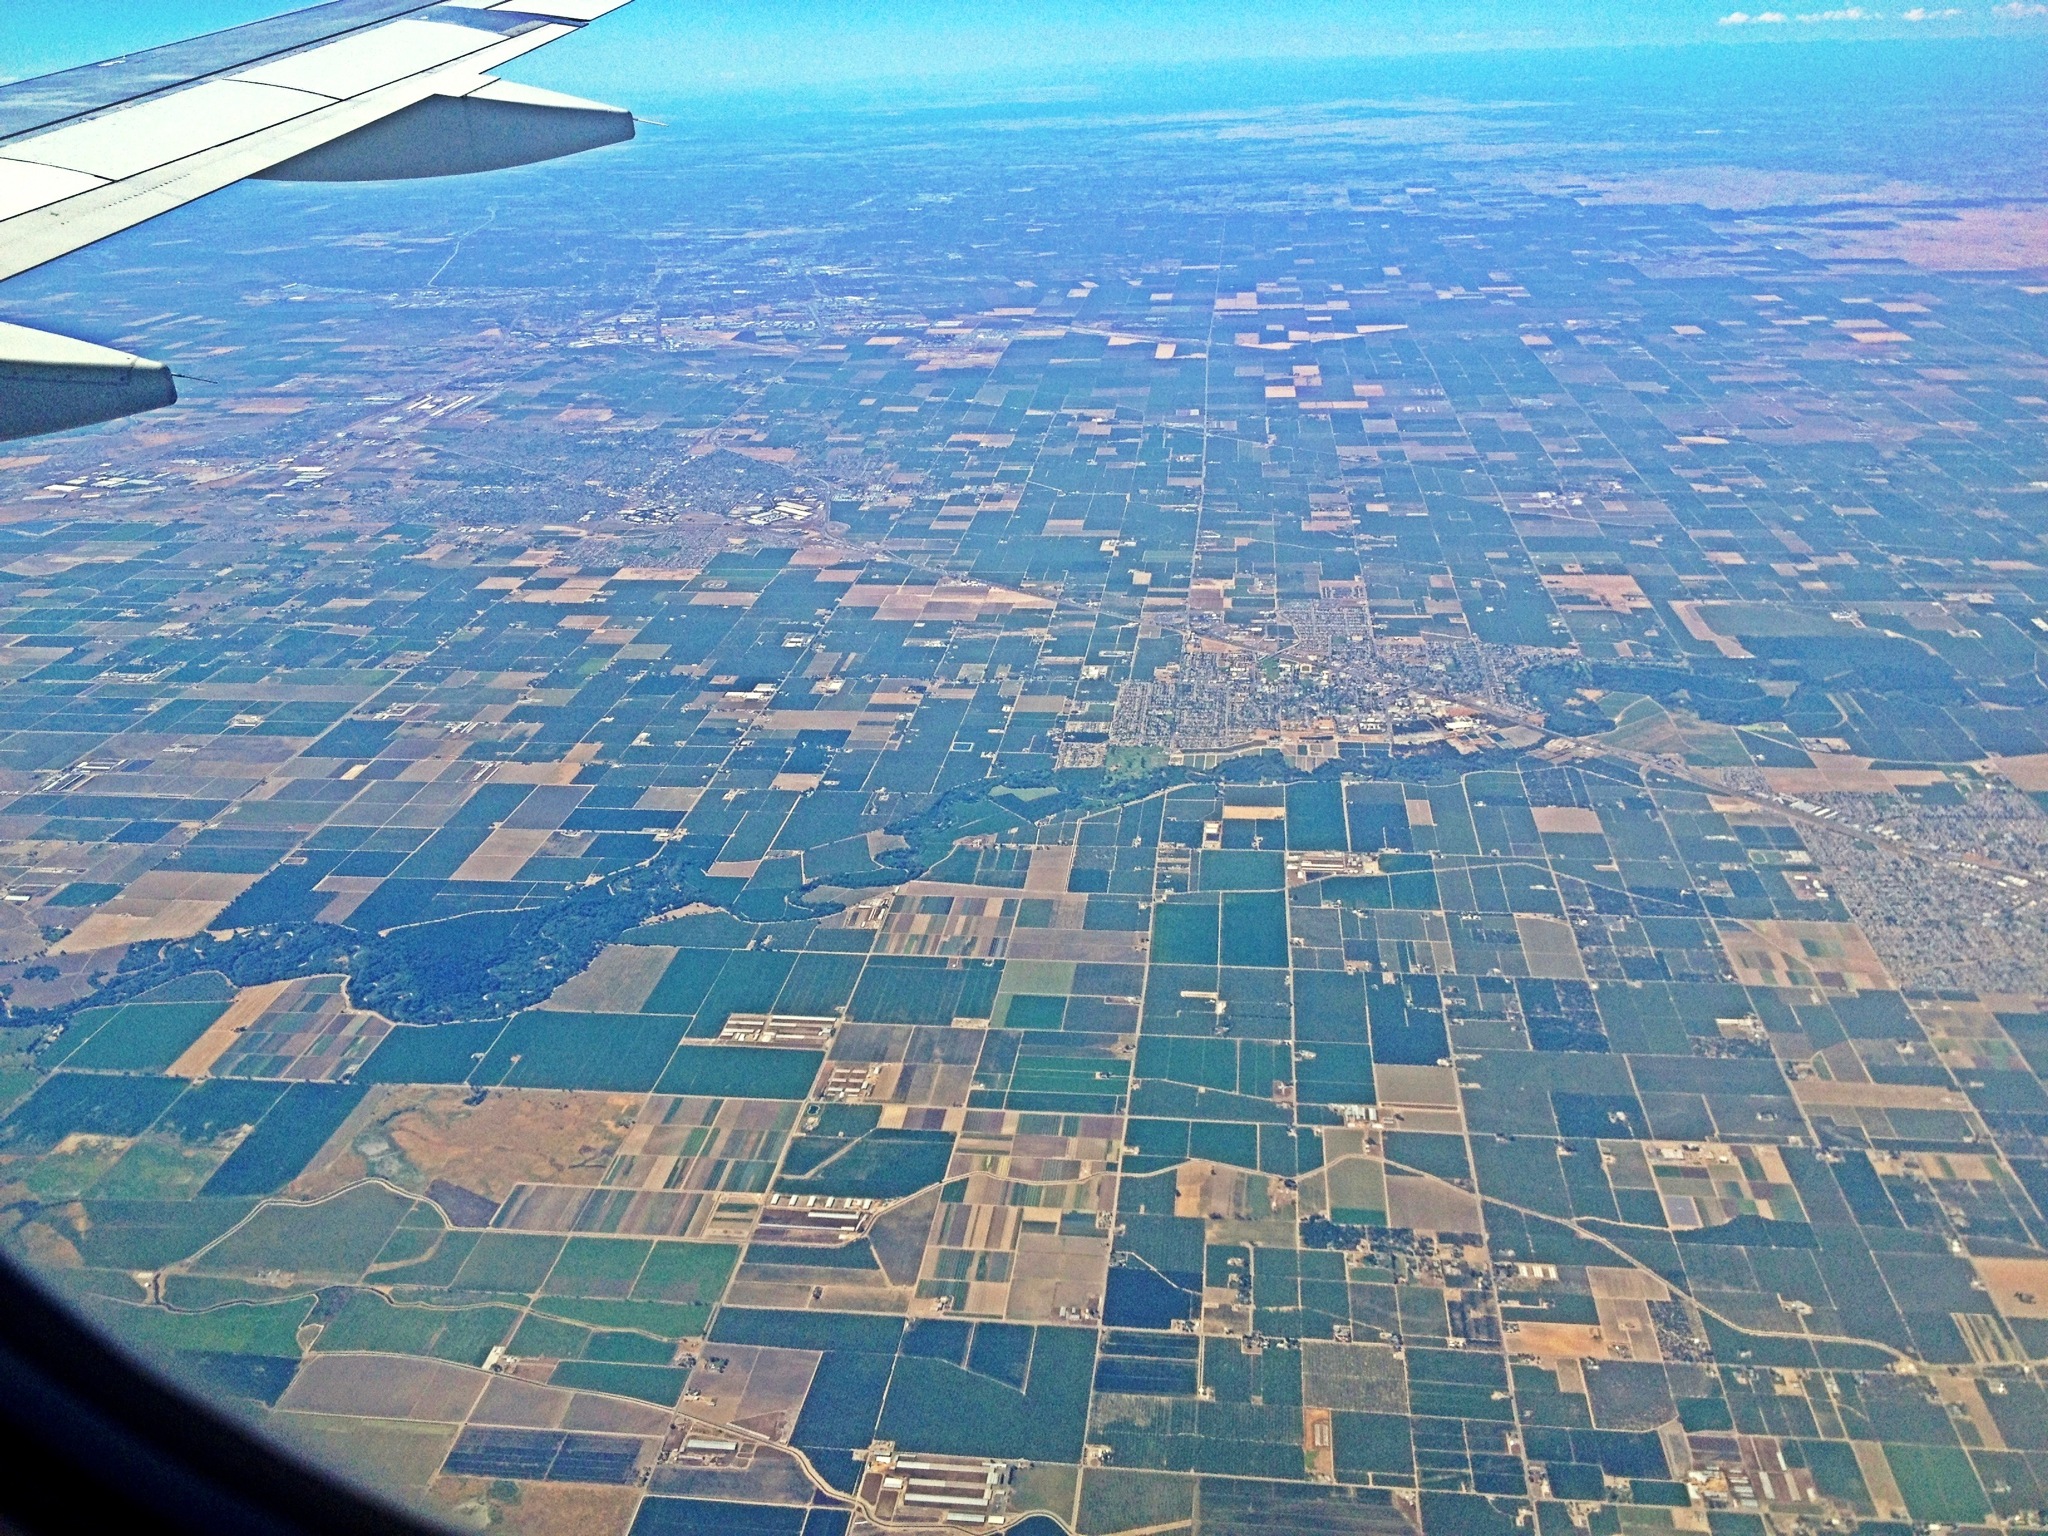 California farms from the air